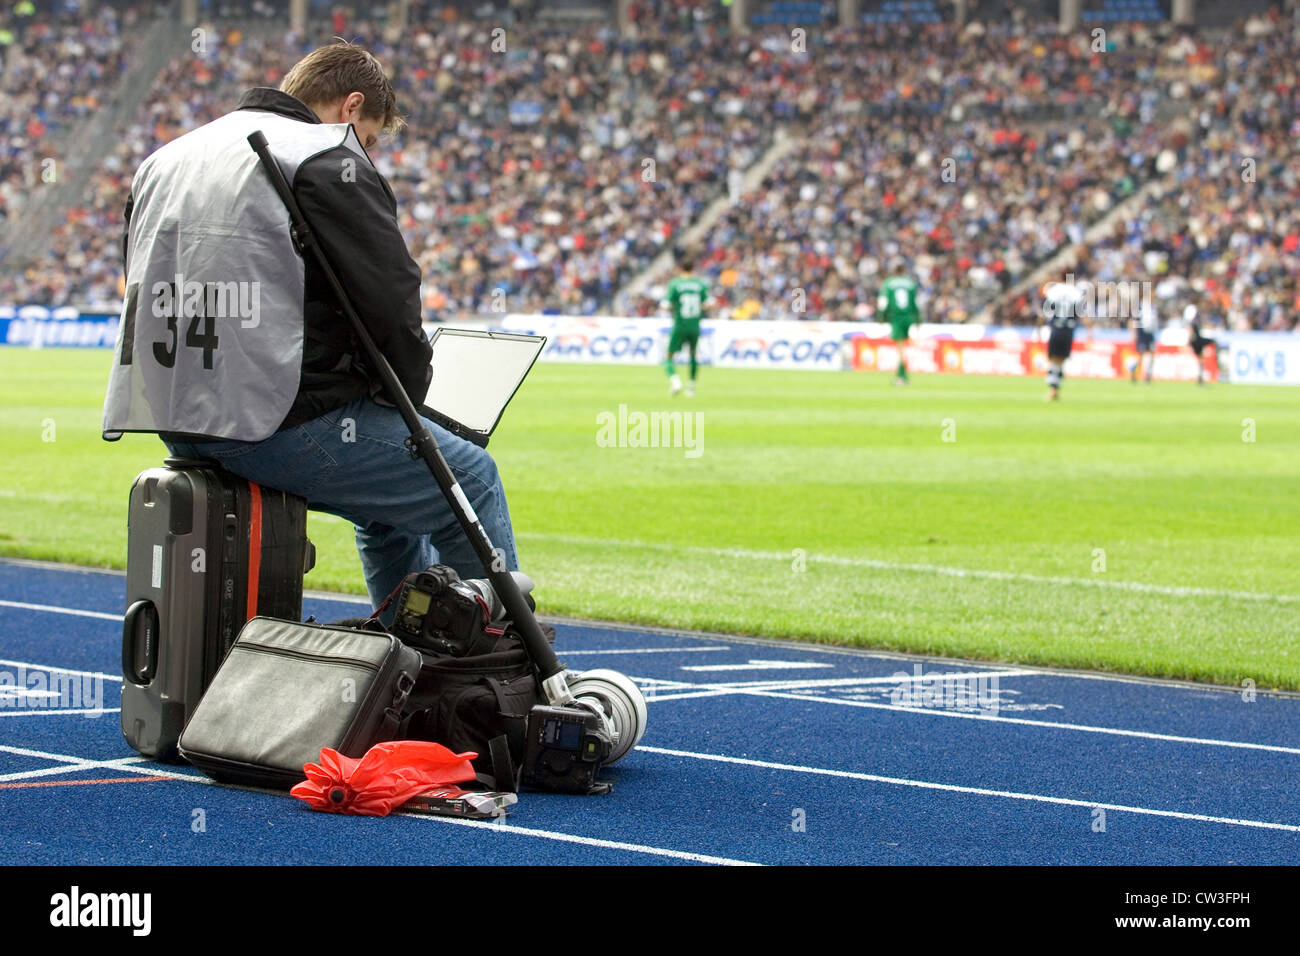 Berlín, un periodista deportivo, en un partido de fútbol en el banquillo Foto de stock